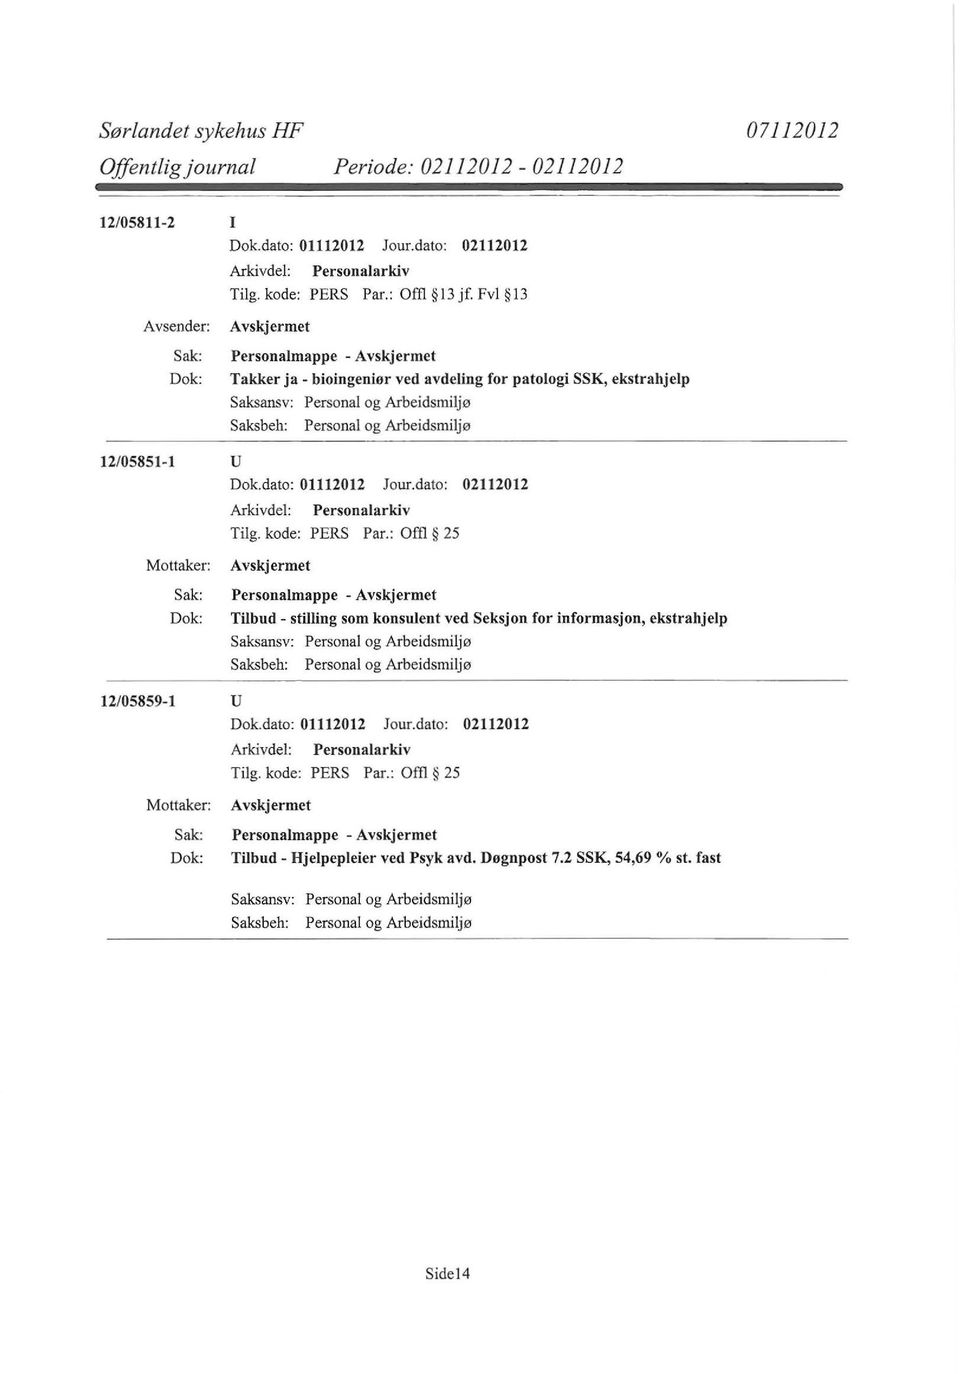 12/05851-1 u Personalmappe - Tilbud - stilling som konsulent ved Seksjon for informasjon,